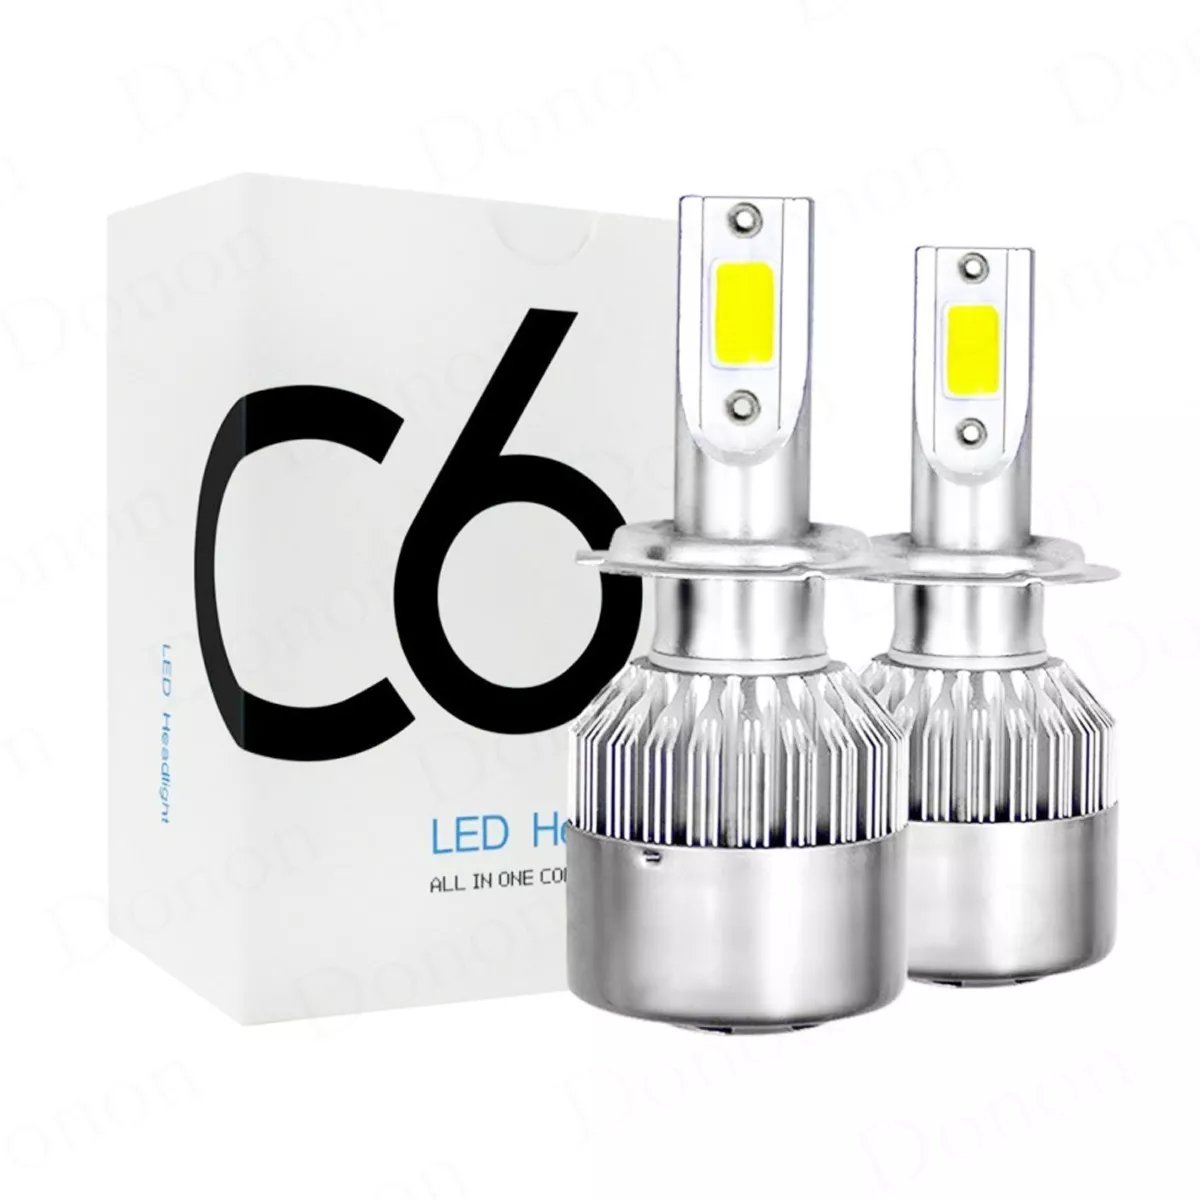 Par C6 Lampada Led Automotiva H1/h3/h4/h7/hb3/hb4/h27